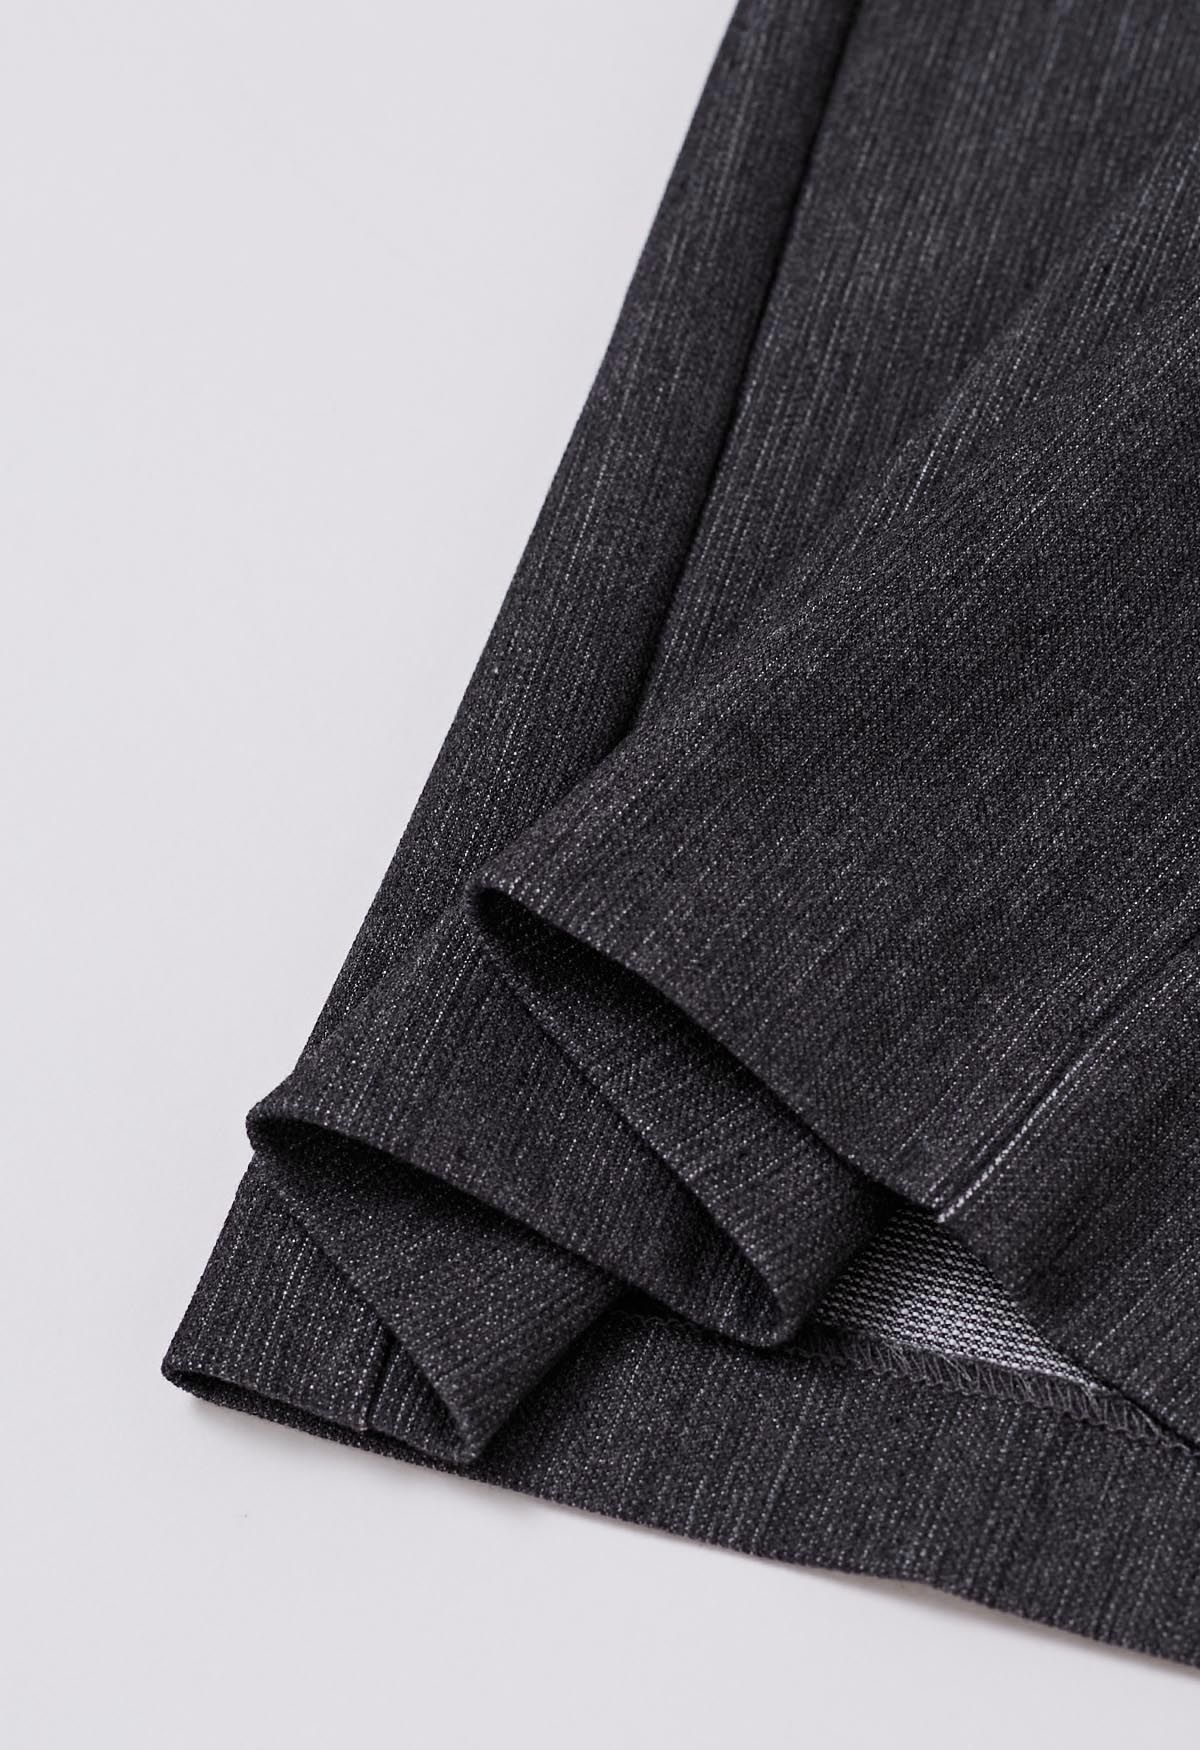 Pantalones anchos plisados cómodos a medida en gris